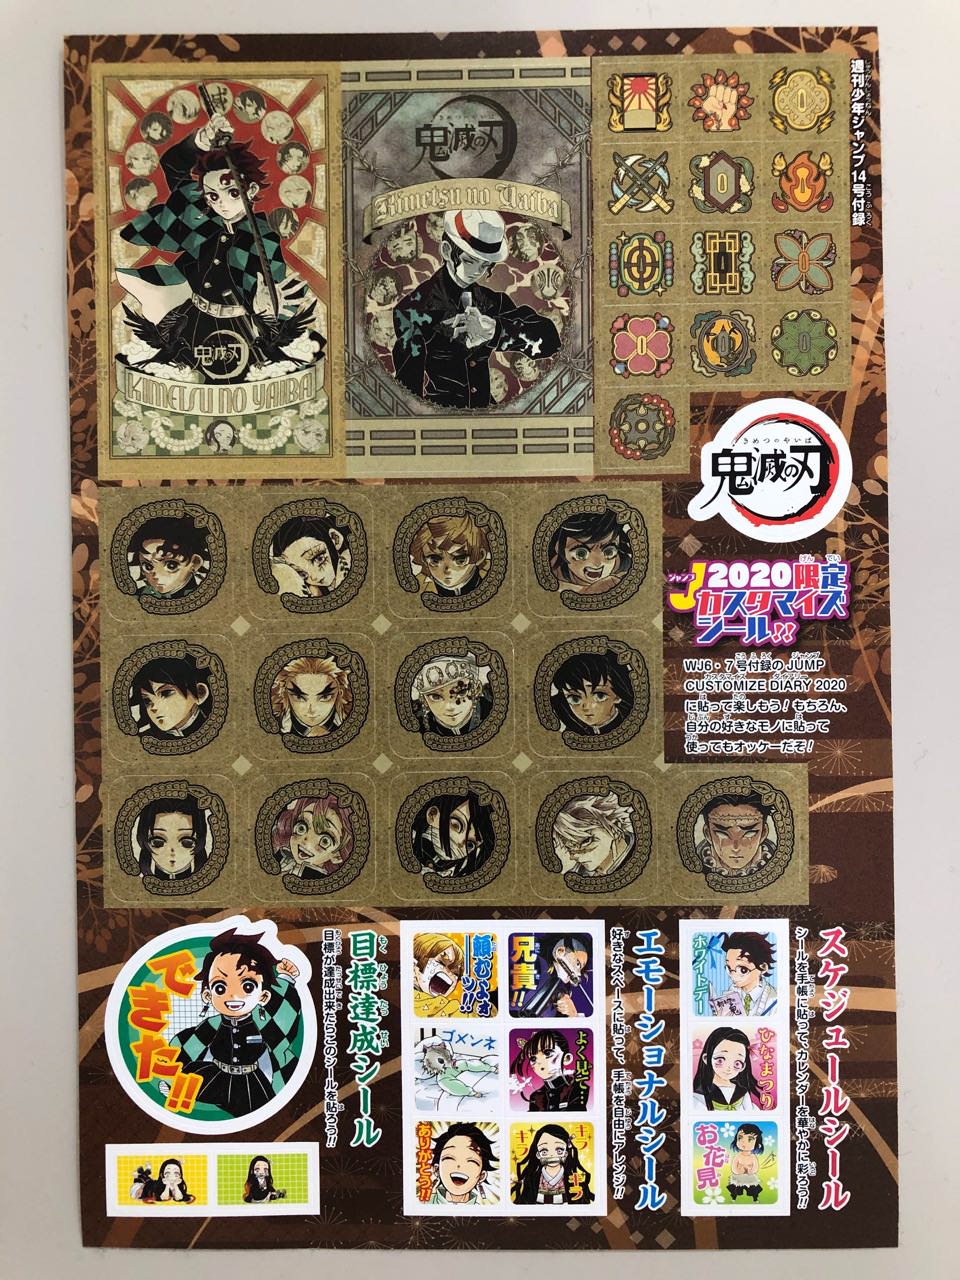 鬼滅の刃 3.2発売の週刊少年ジャンプ14号を購入で限定シールプレゼント!